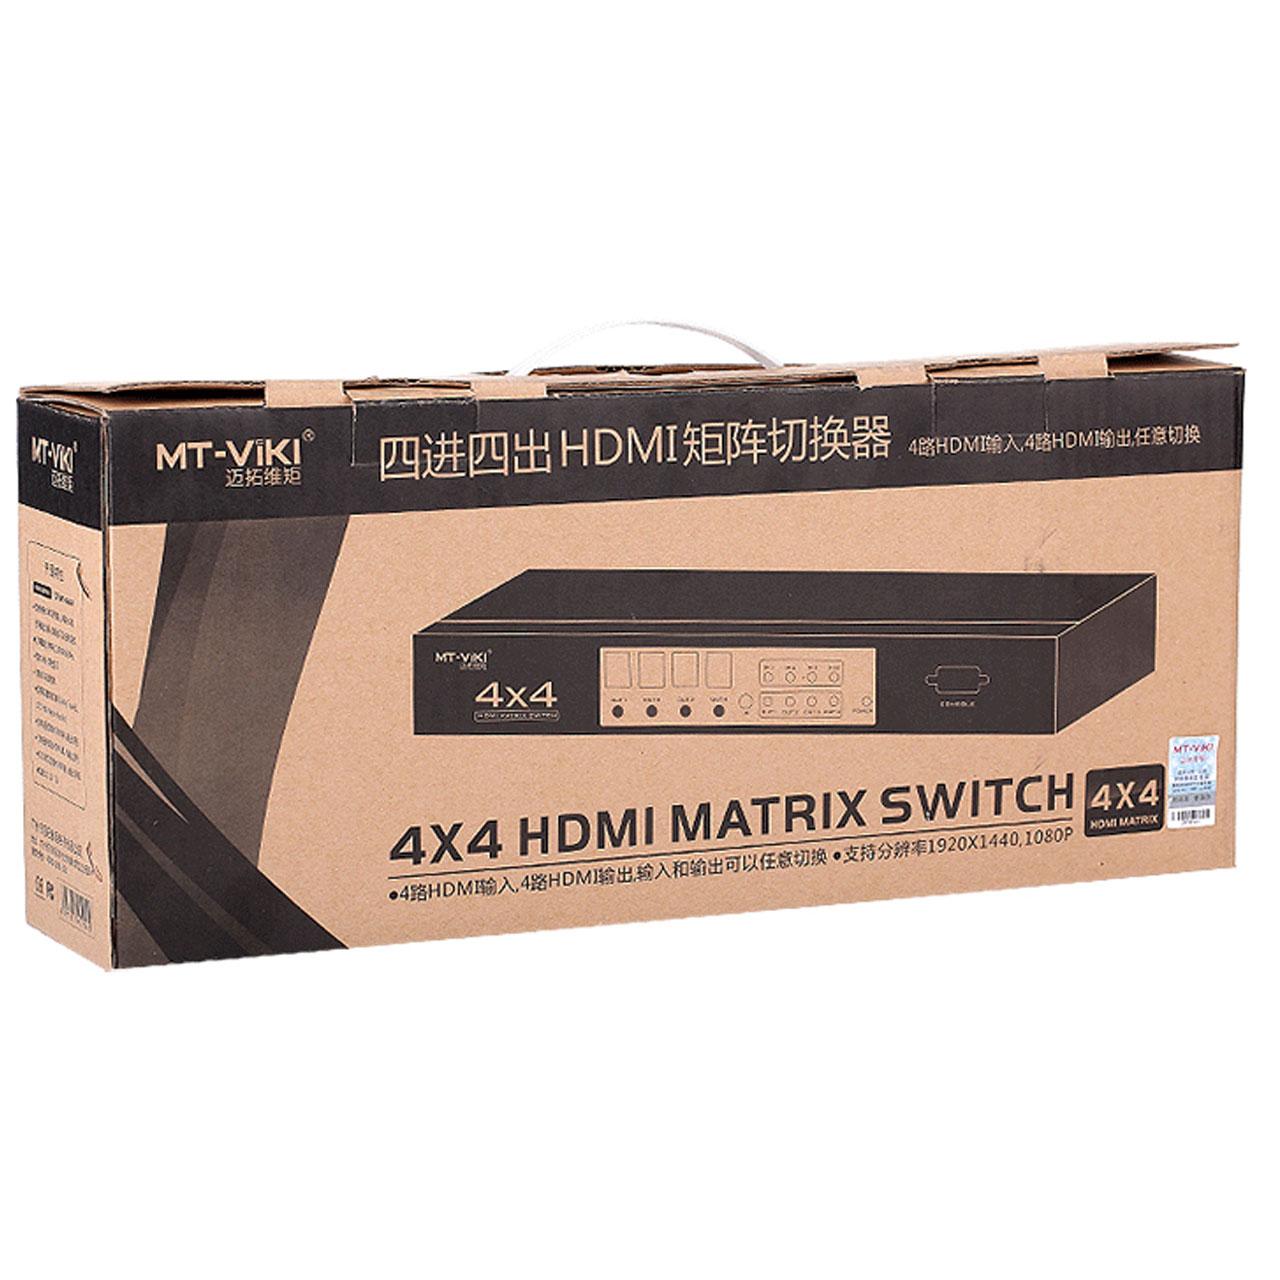 سوییچ ماتریکس HDMI 4K 4X4  مدل MT-VIKI